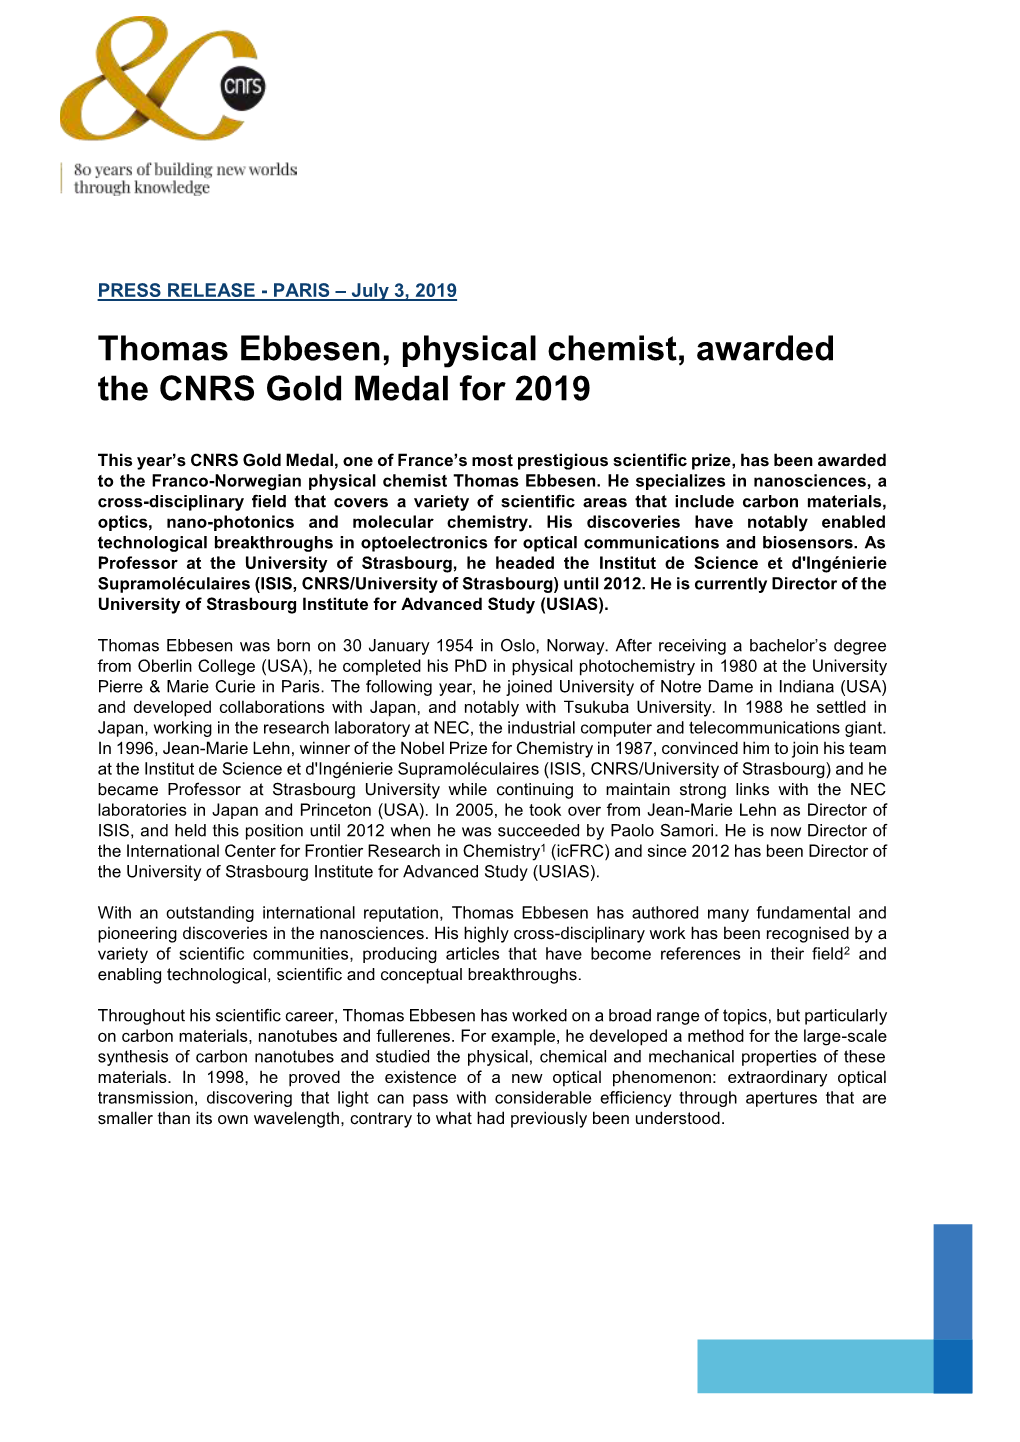 Thomas Ebbesen, Physical Chemist, Awarded the CNRS Gold Medal For